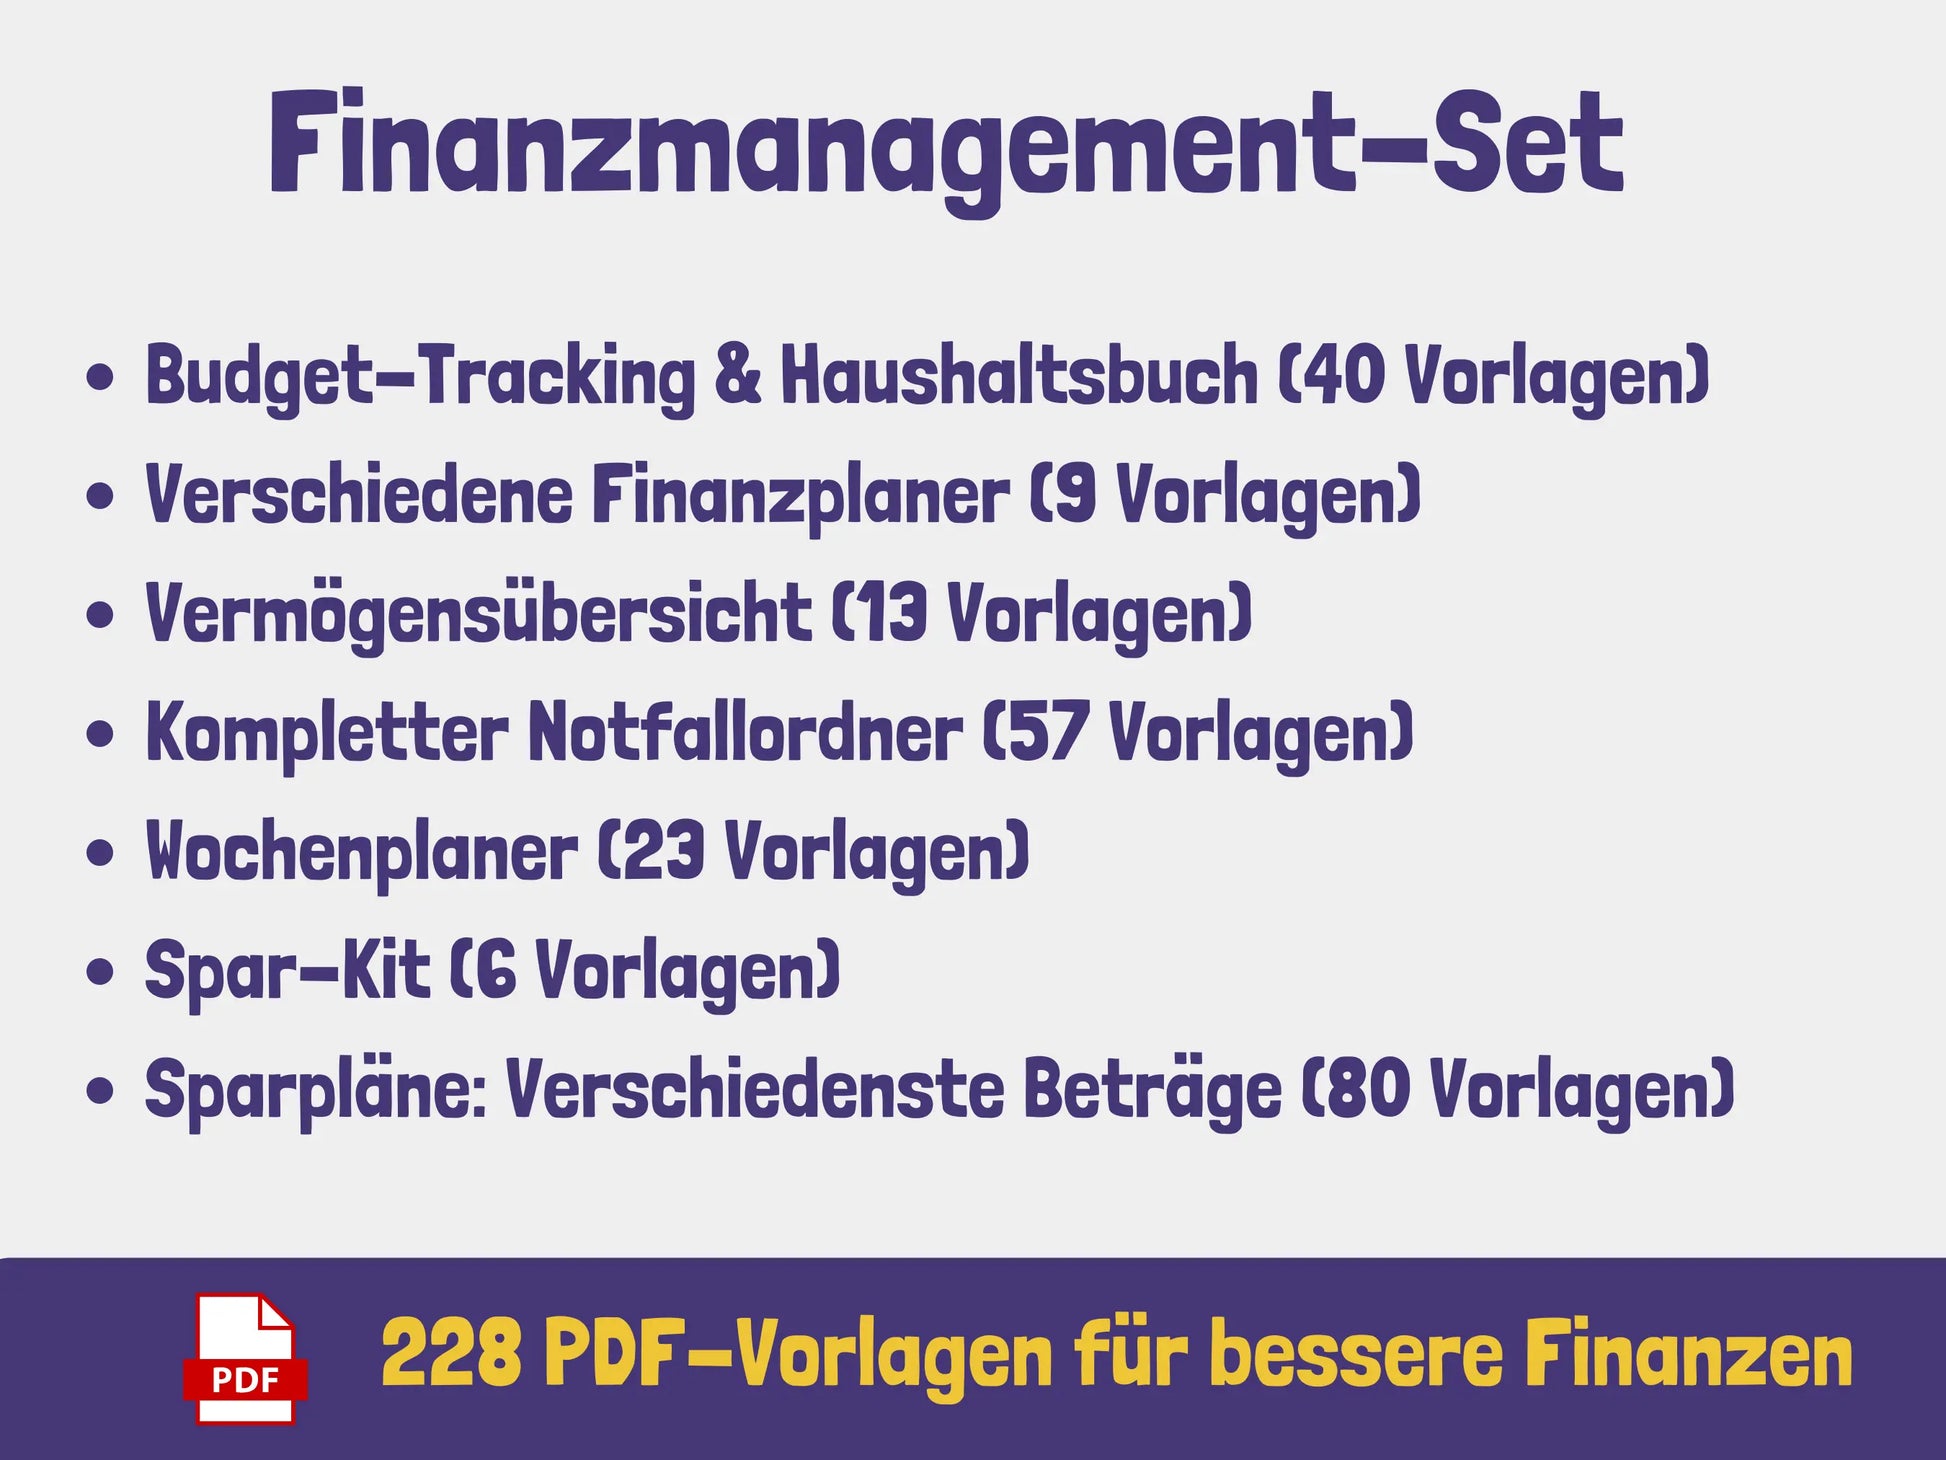 7-in-1 Finanz-Set - Angebot PDF AndreasJansen Vorlage